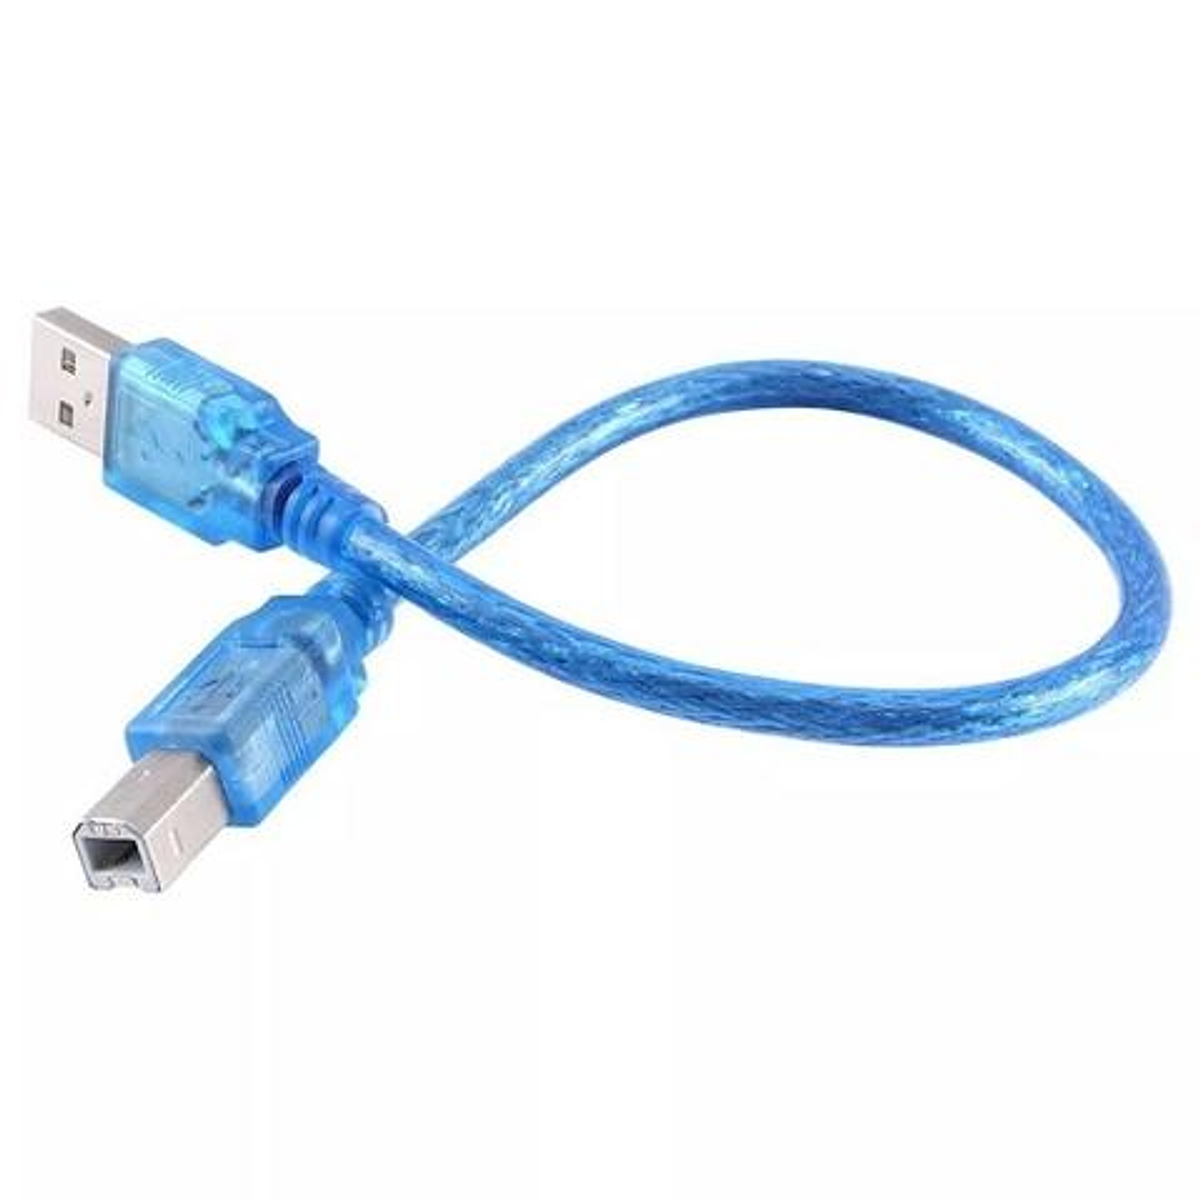 CABLE USB 30cm COMPATIBLE CON ARDUINO UNO - MEGA - ZAMUX